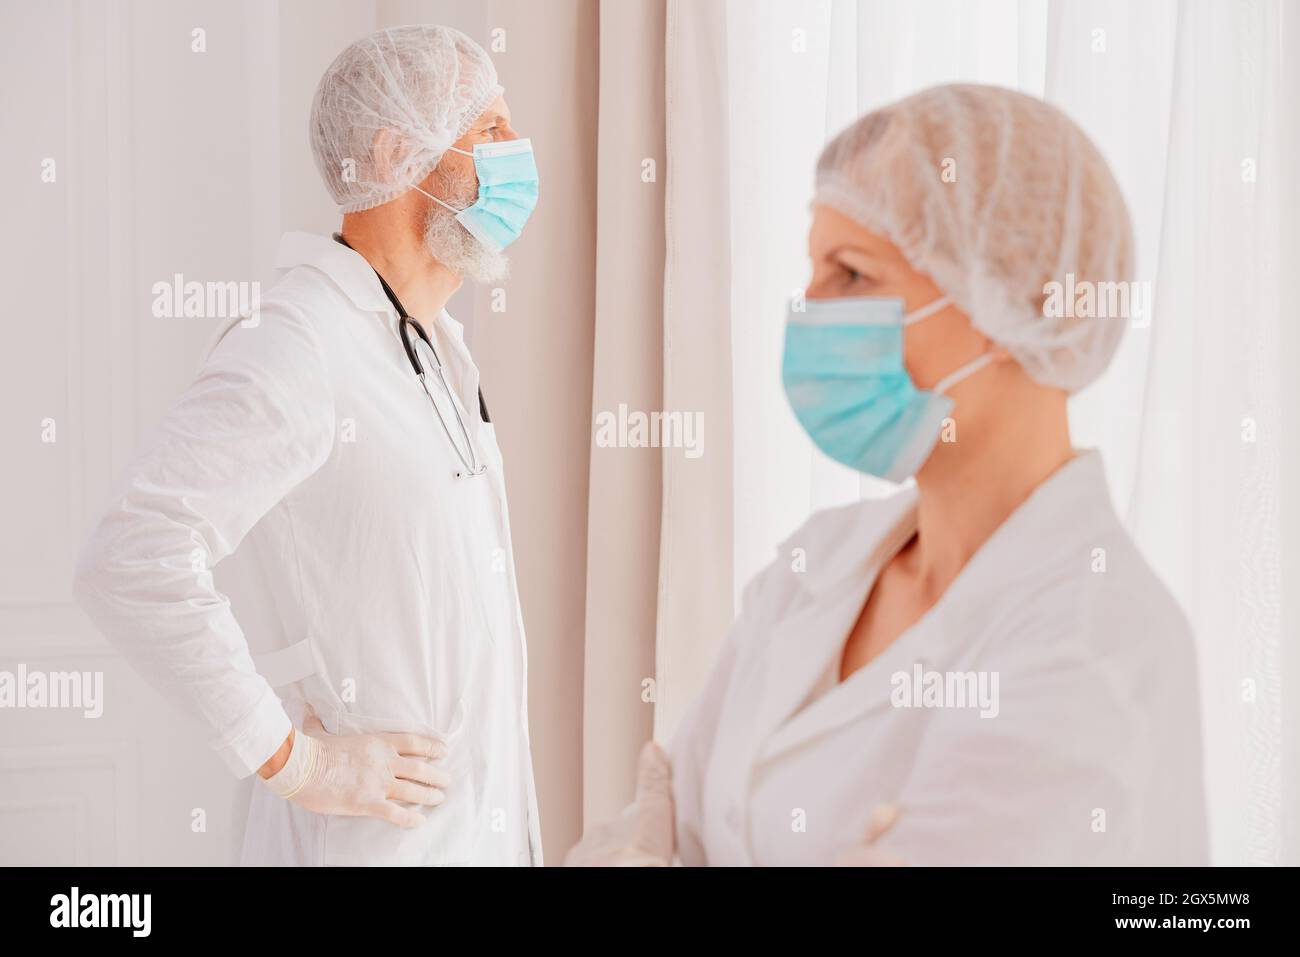 los médicos con máscara facial piensan que están listos para trabajar Foto de stock